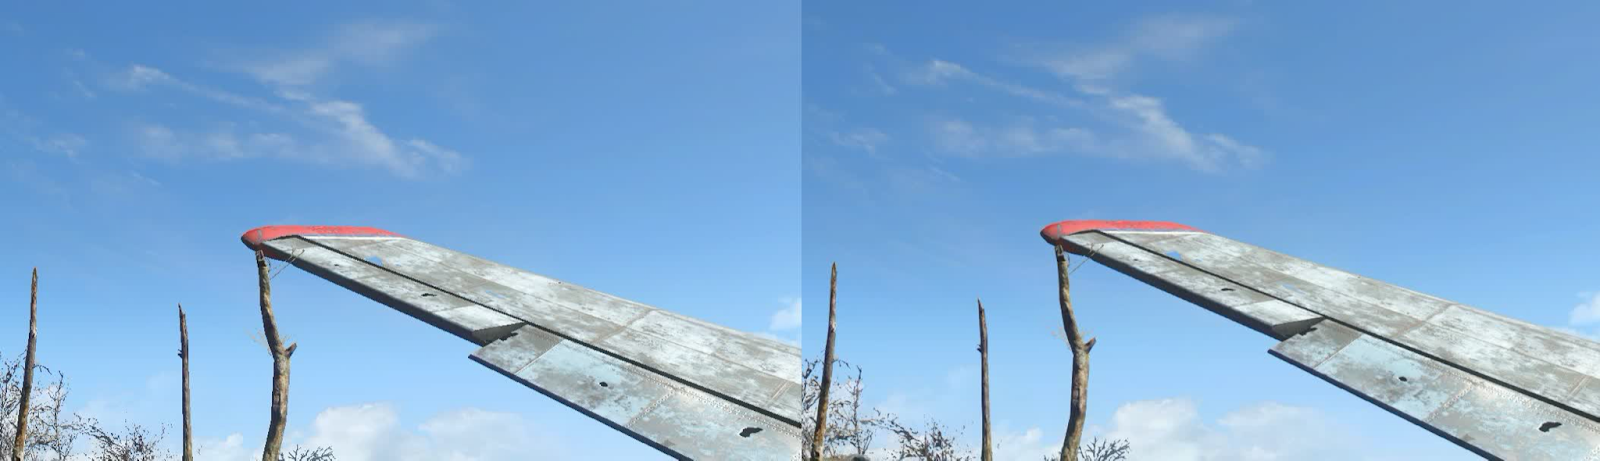 Без AA (слева) и FXAA (справа) — обратите внимание, что деревья и элероны на крыле выглядят намного более гладкими